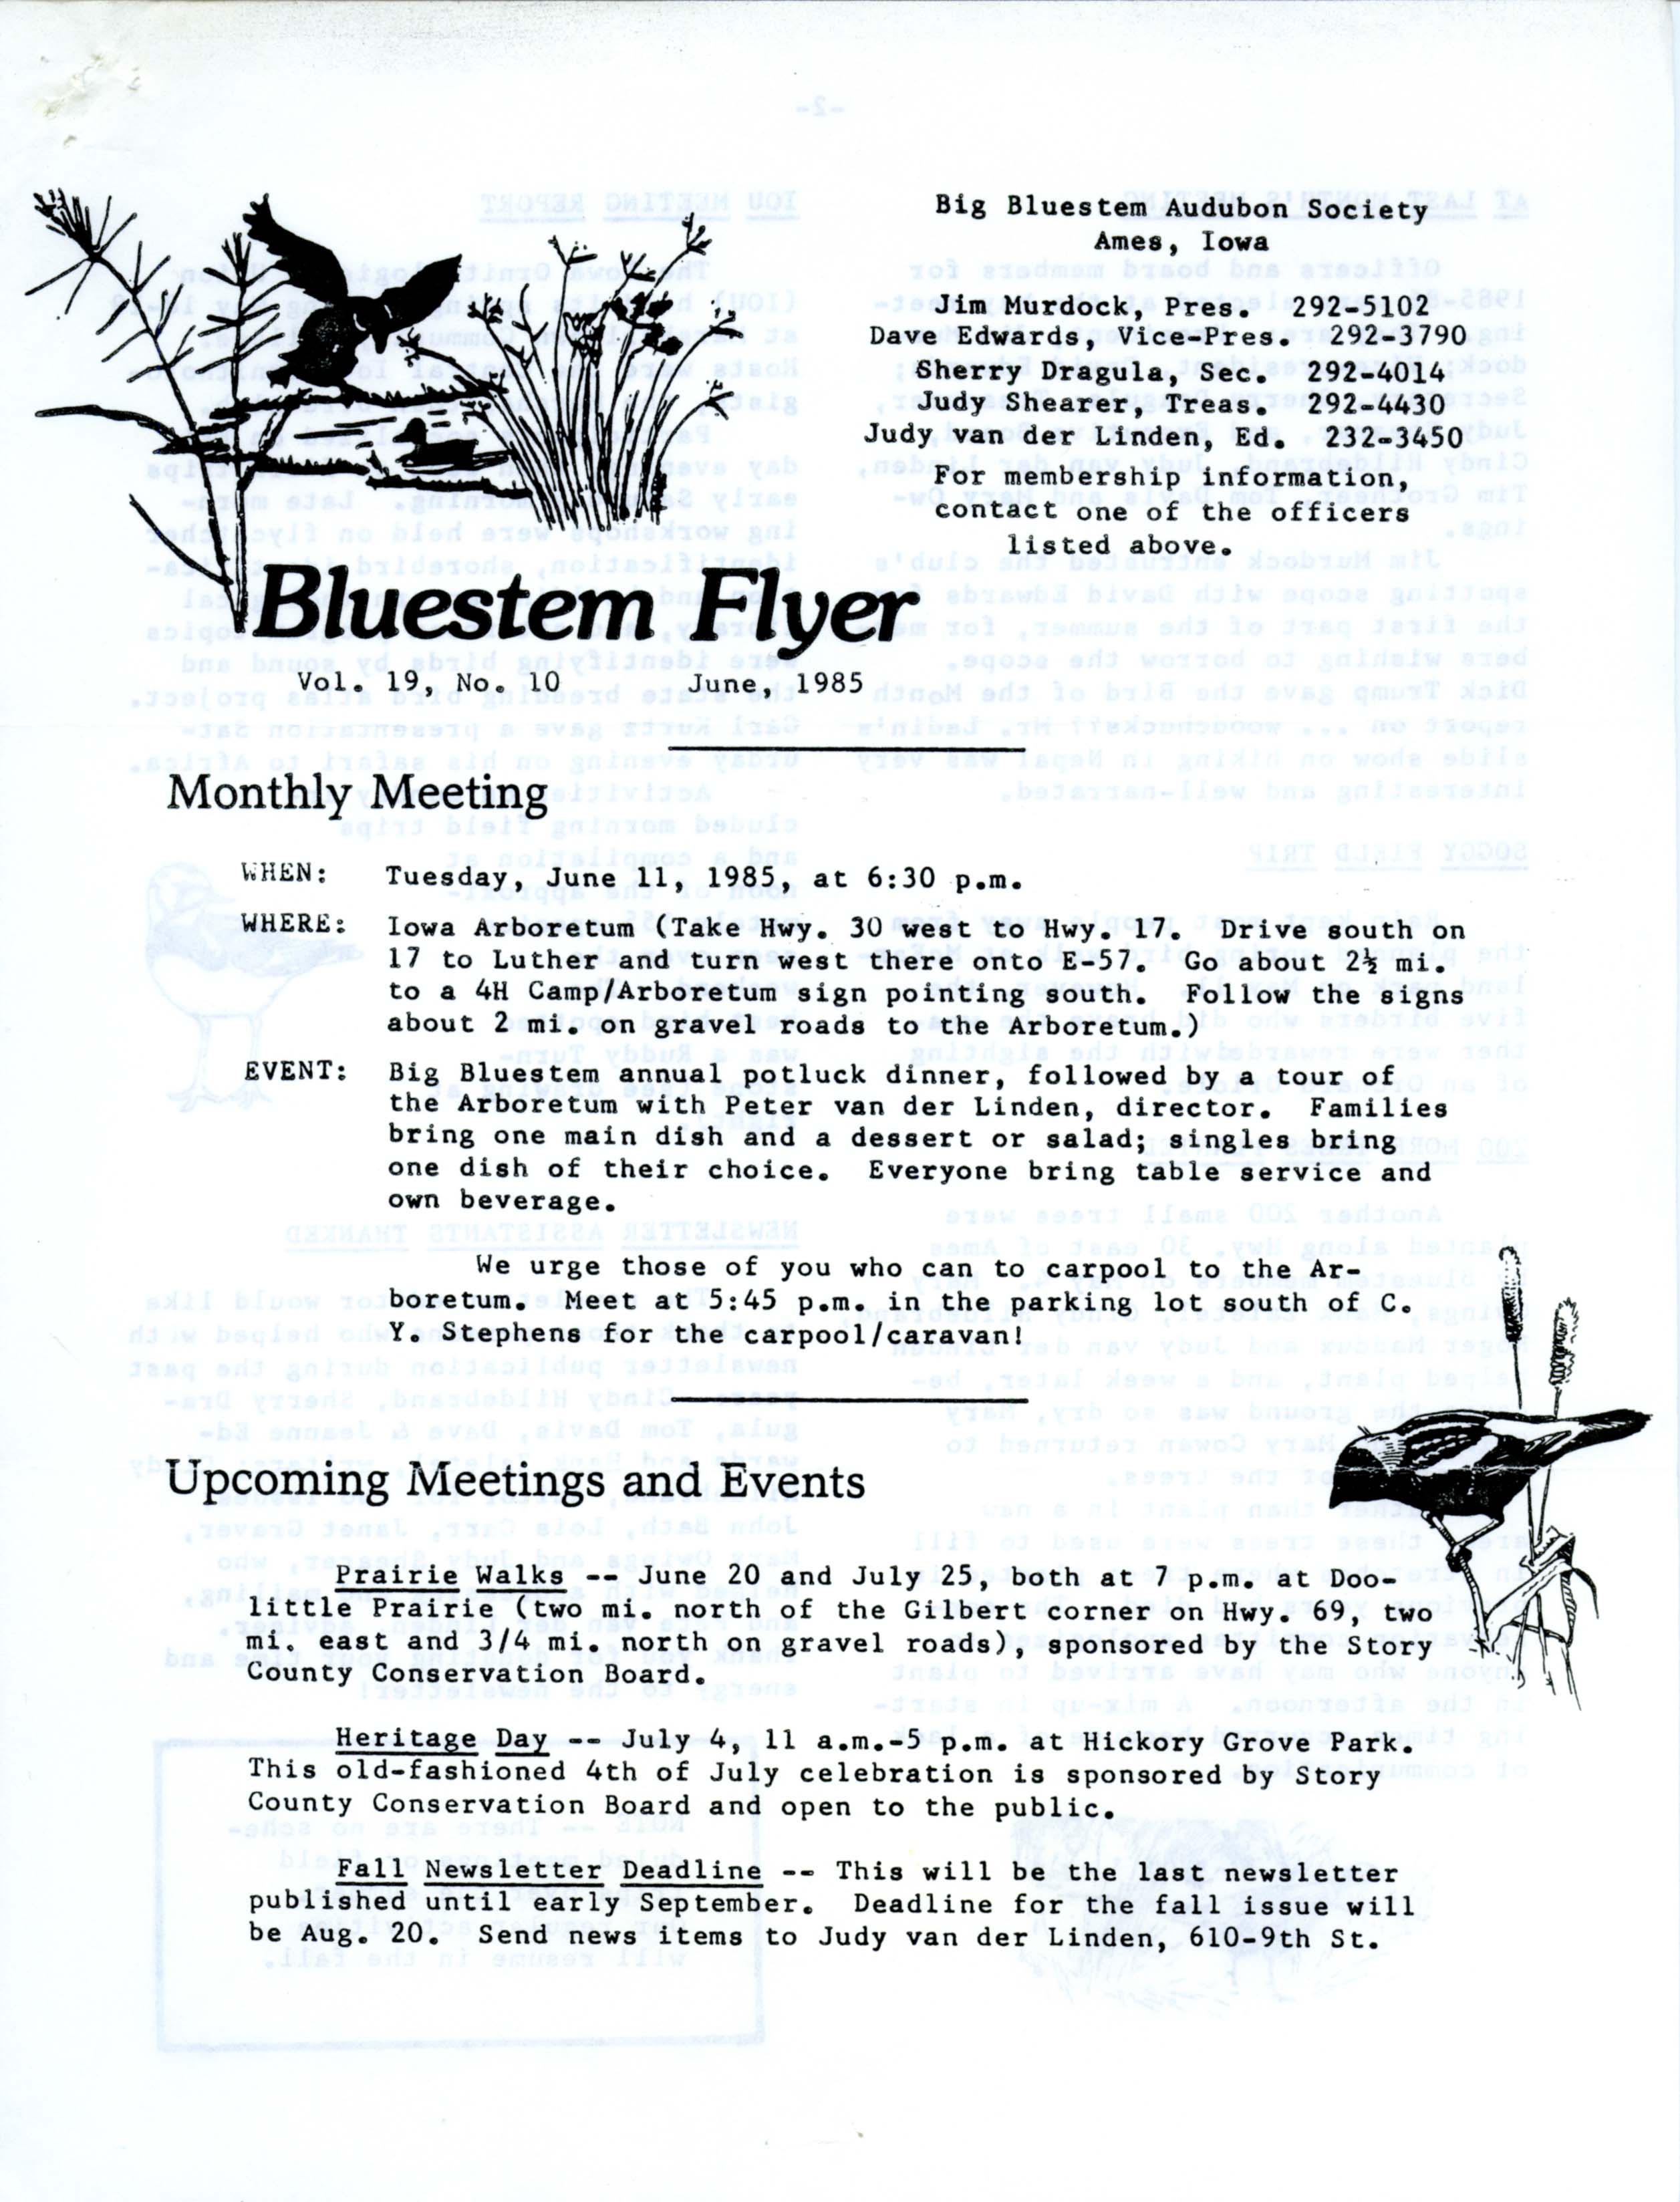 Bluestem Flyer, Volume 19, Number 10, June 1985